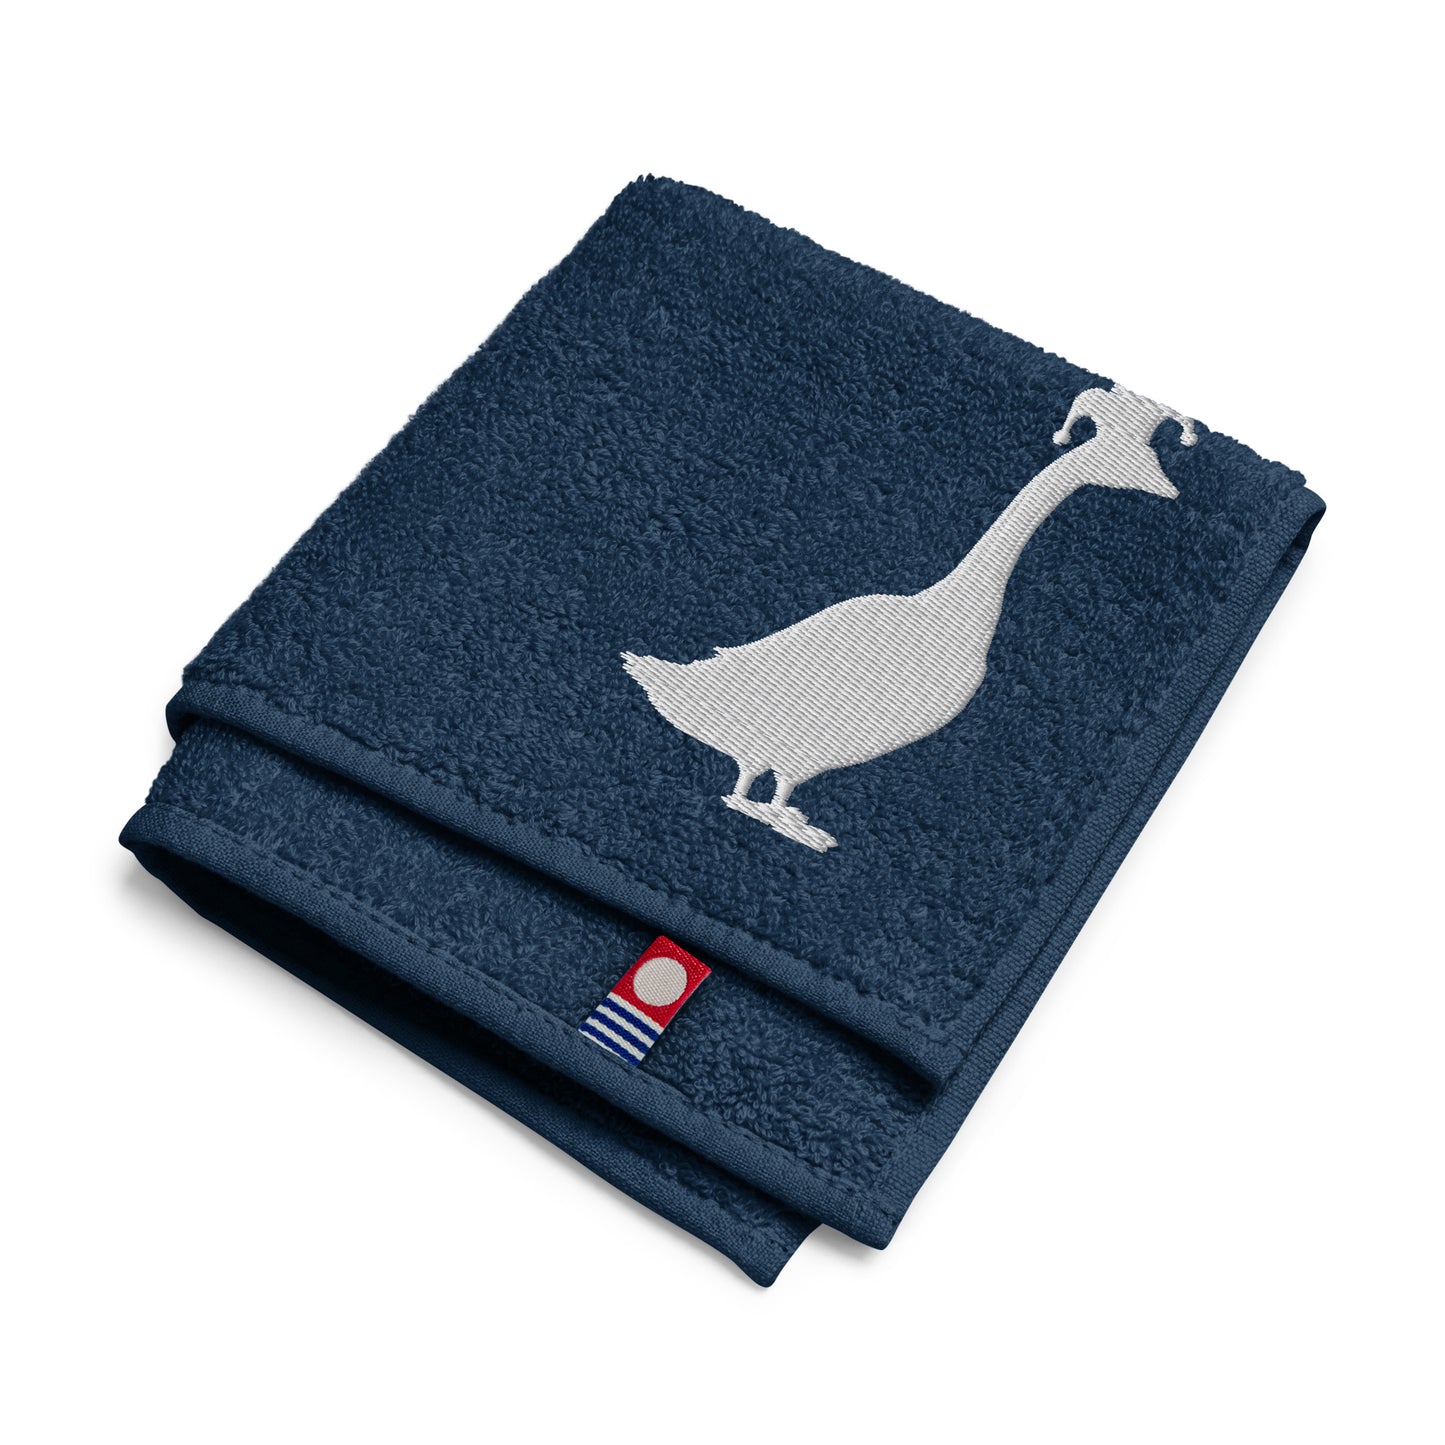 SGU | Goose Icon Cotton Hand Towel